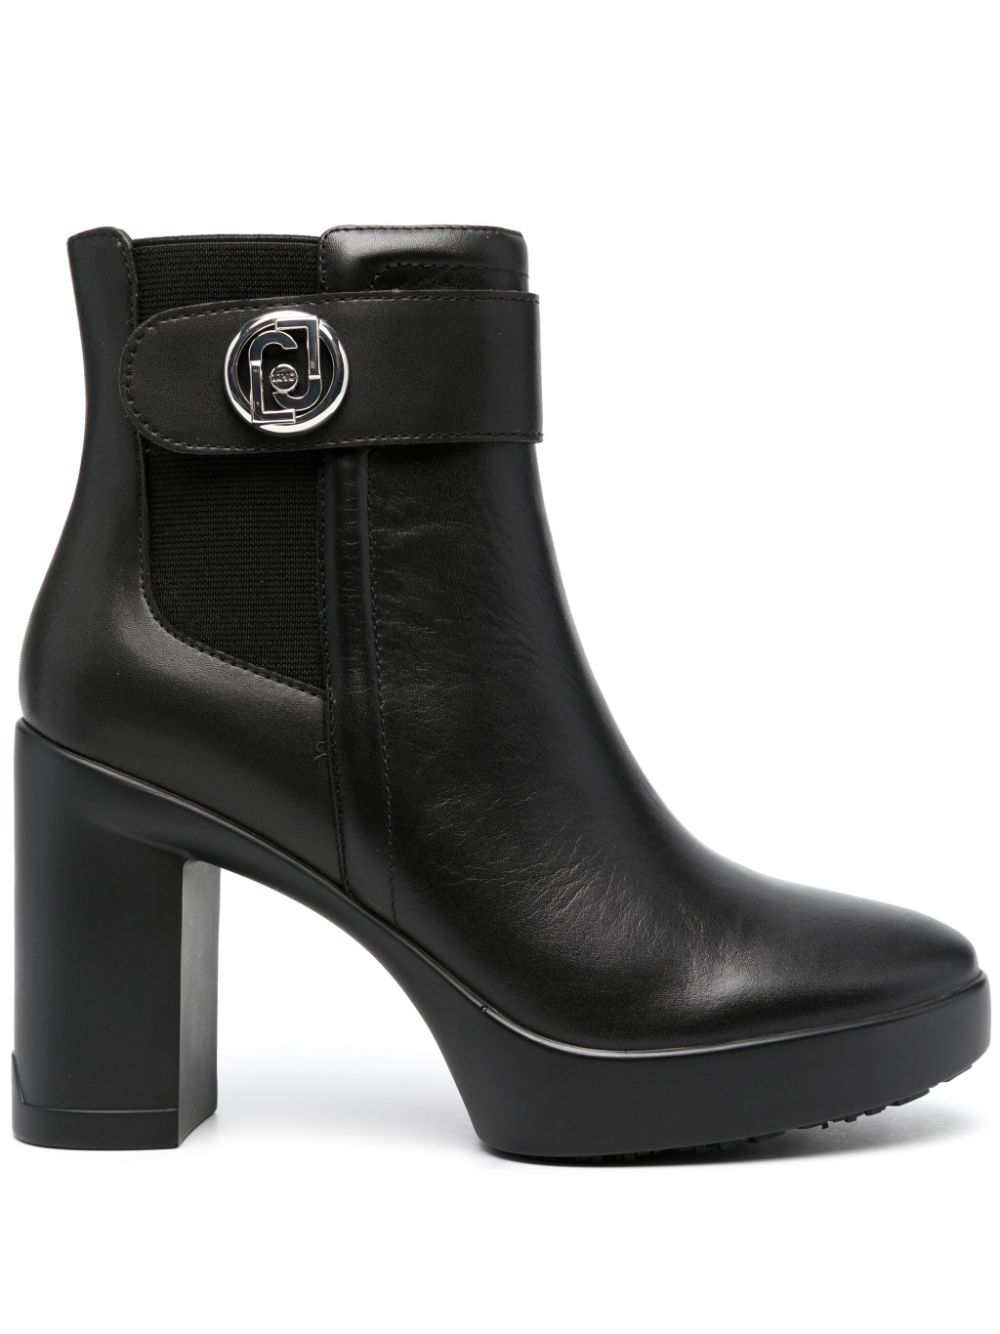 LIU JO 100mm leather boots - Black von LIU JO